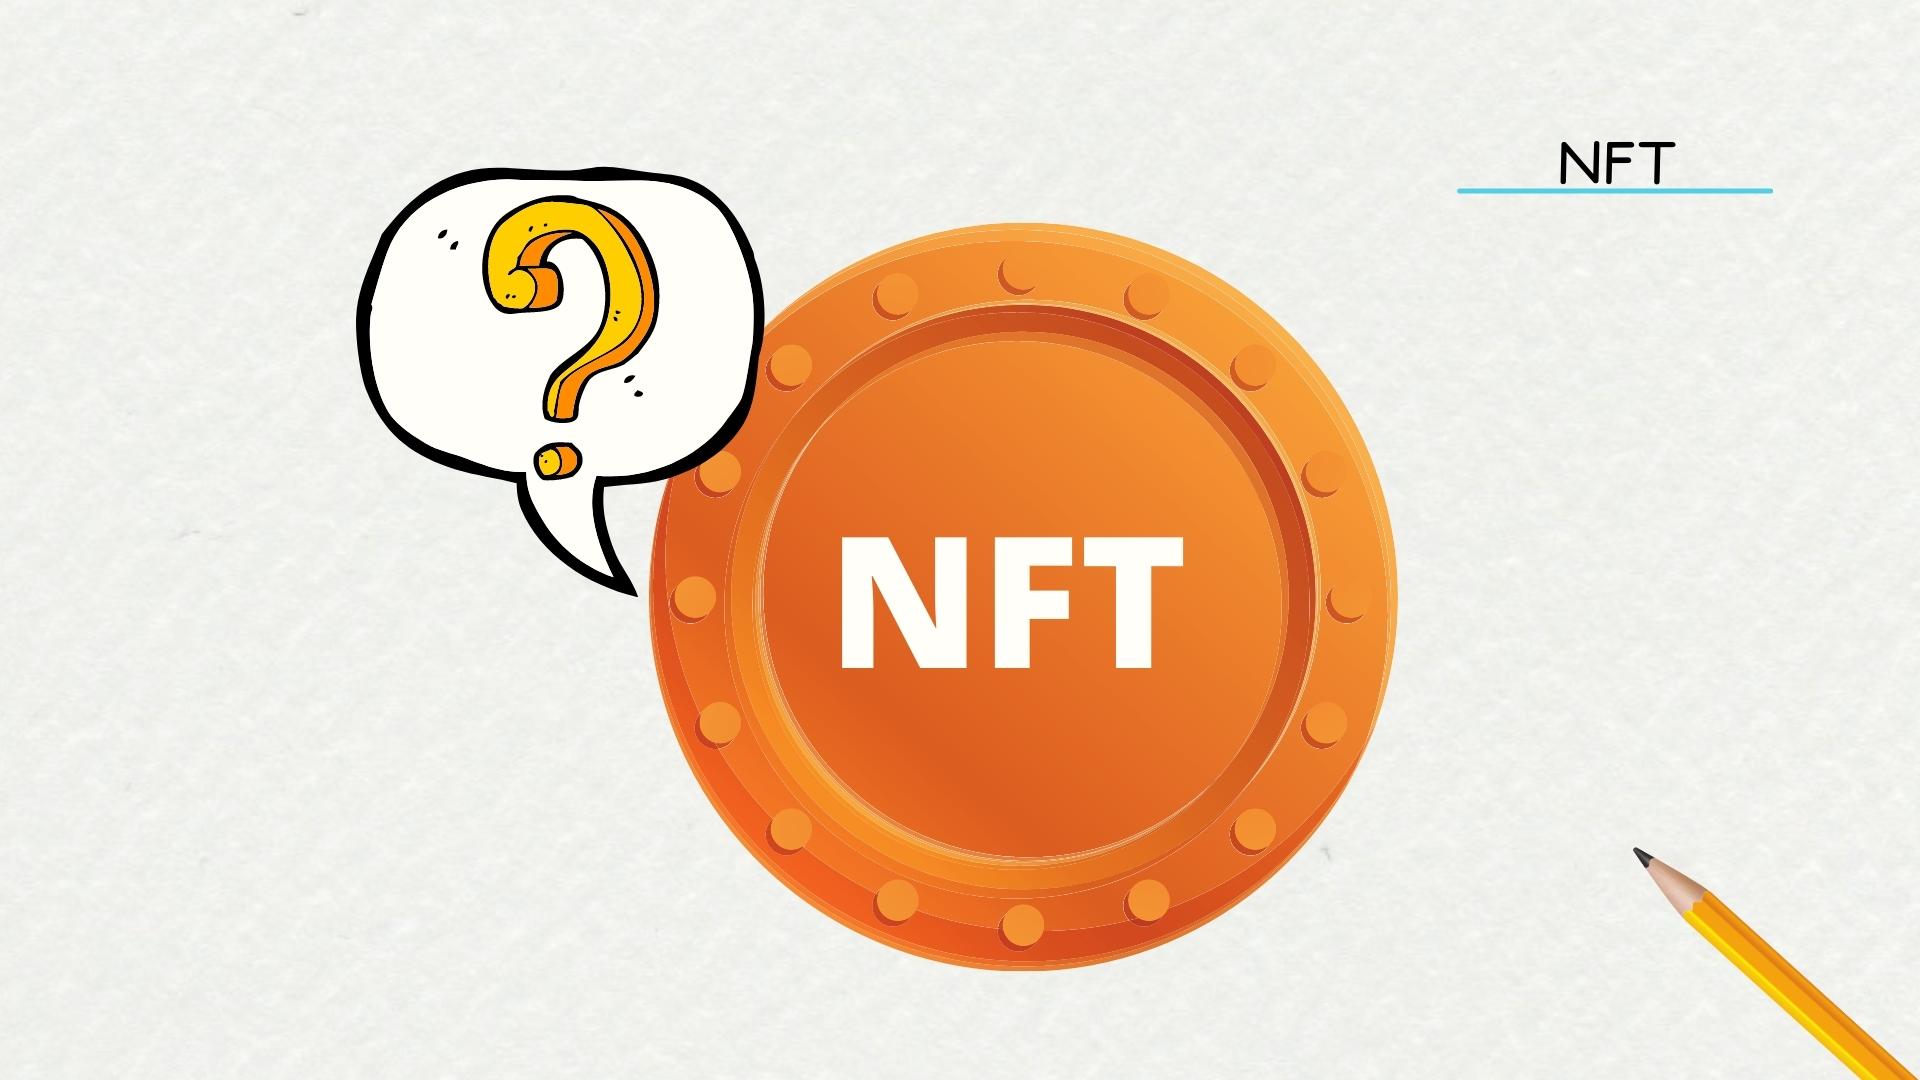 Исследование: болельщики не доверяют NFT, но горят желанием знать больше. Заглавный коллаж новости.